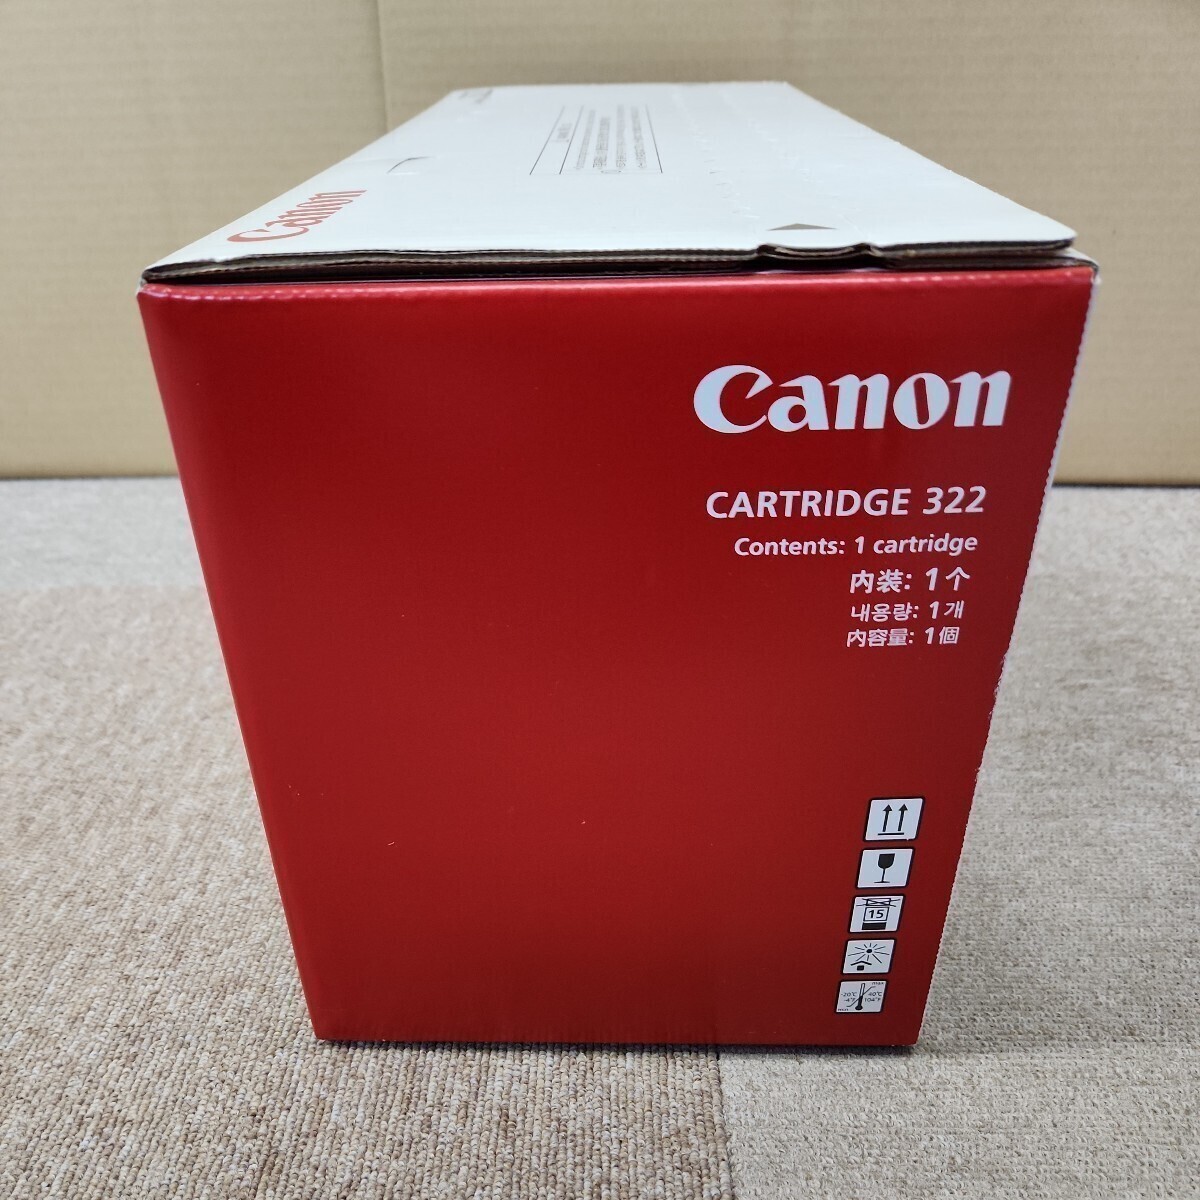 CANON ... картридж  322 ...  оригинальный  товар  ( совместимость  модель  LBP9650Ci/9510C/9600C/9500C/9100C/9200C) 